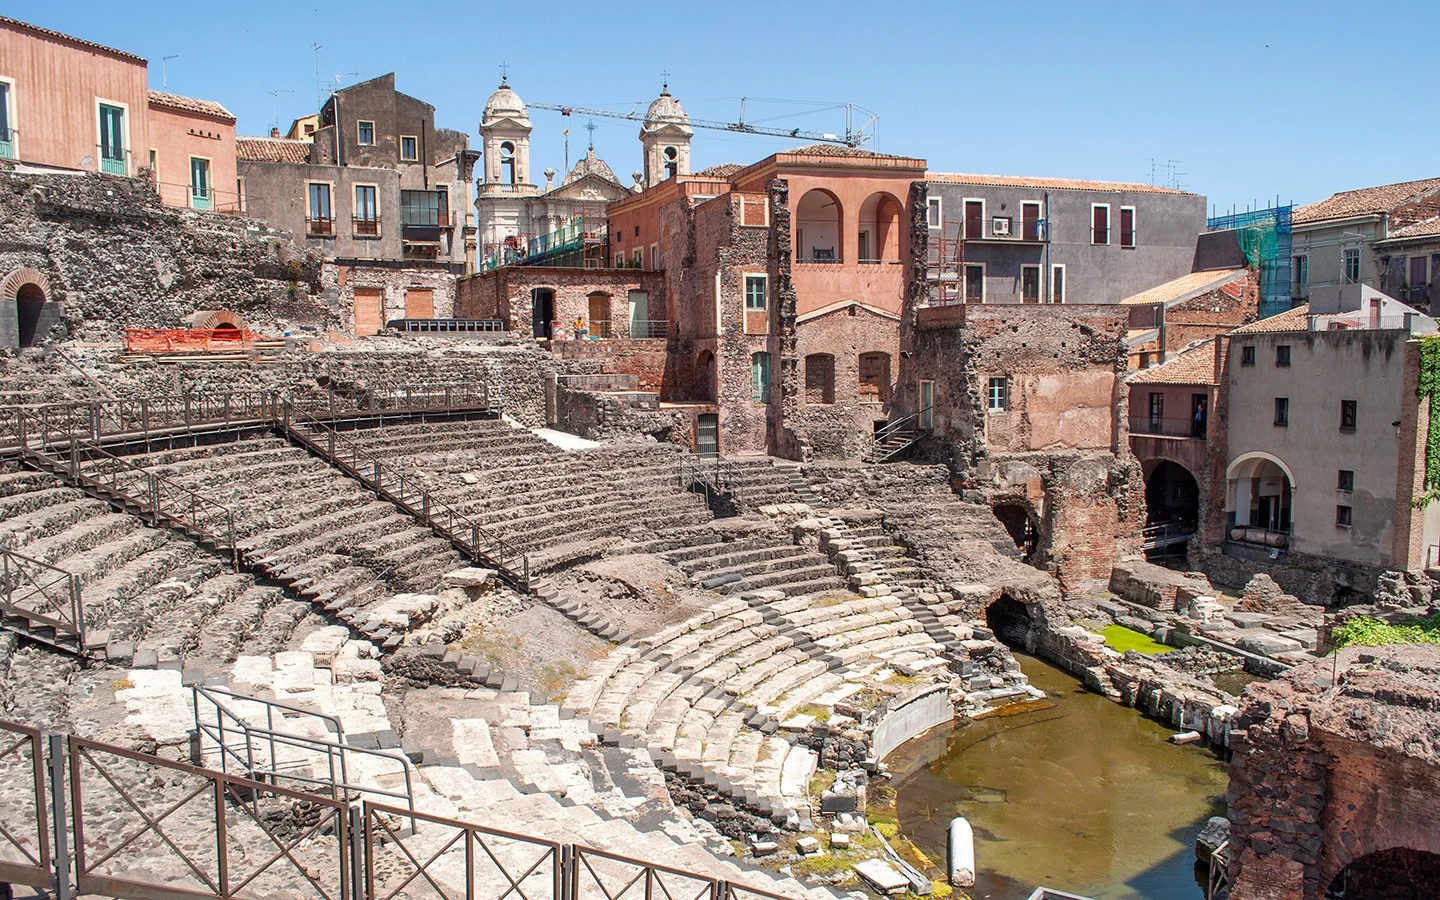 The Roman amphitheatre in Catania, Sicily